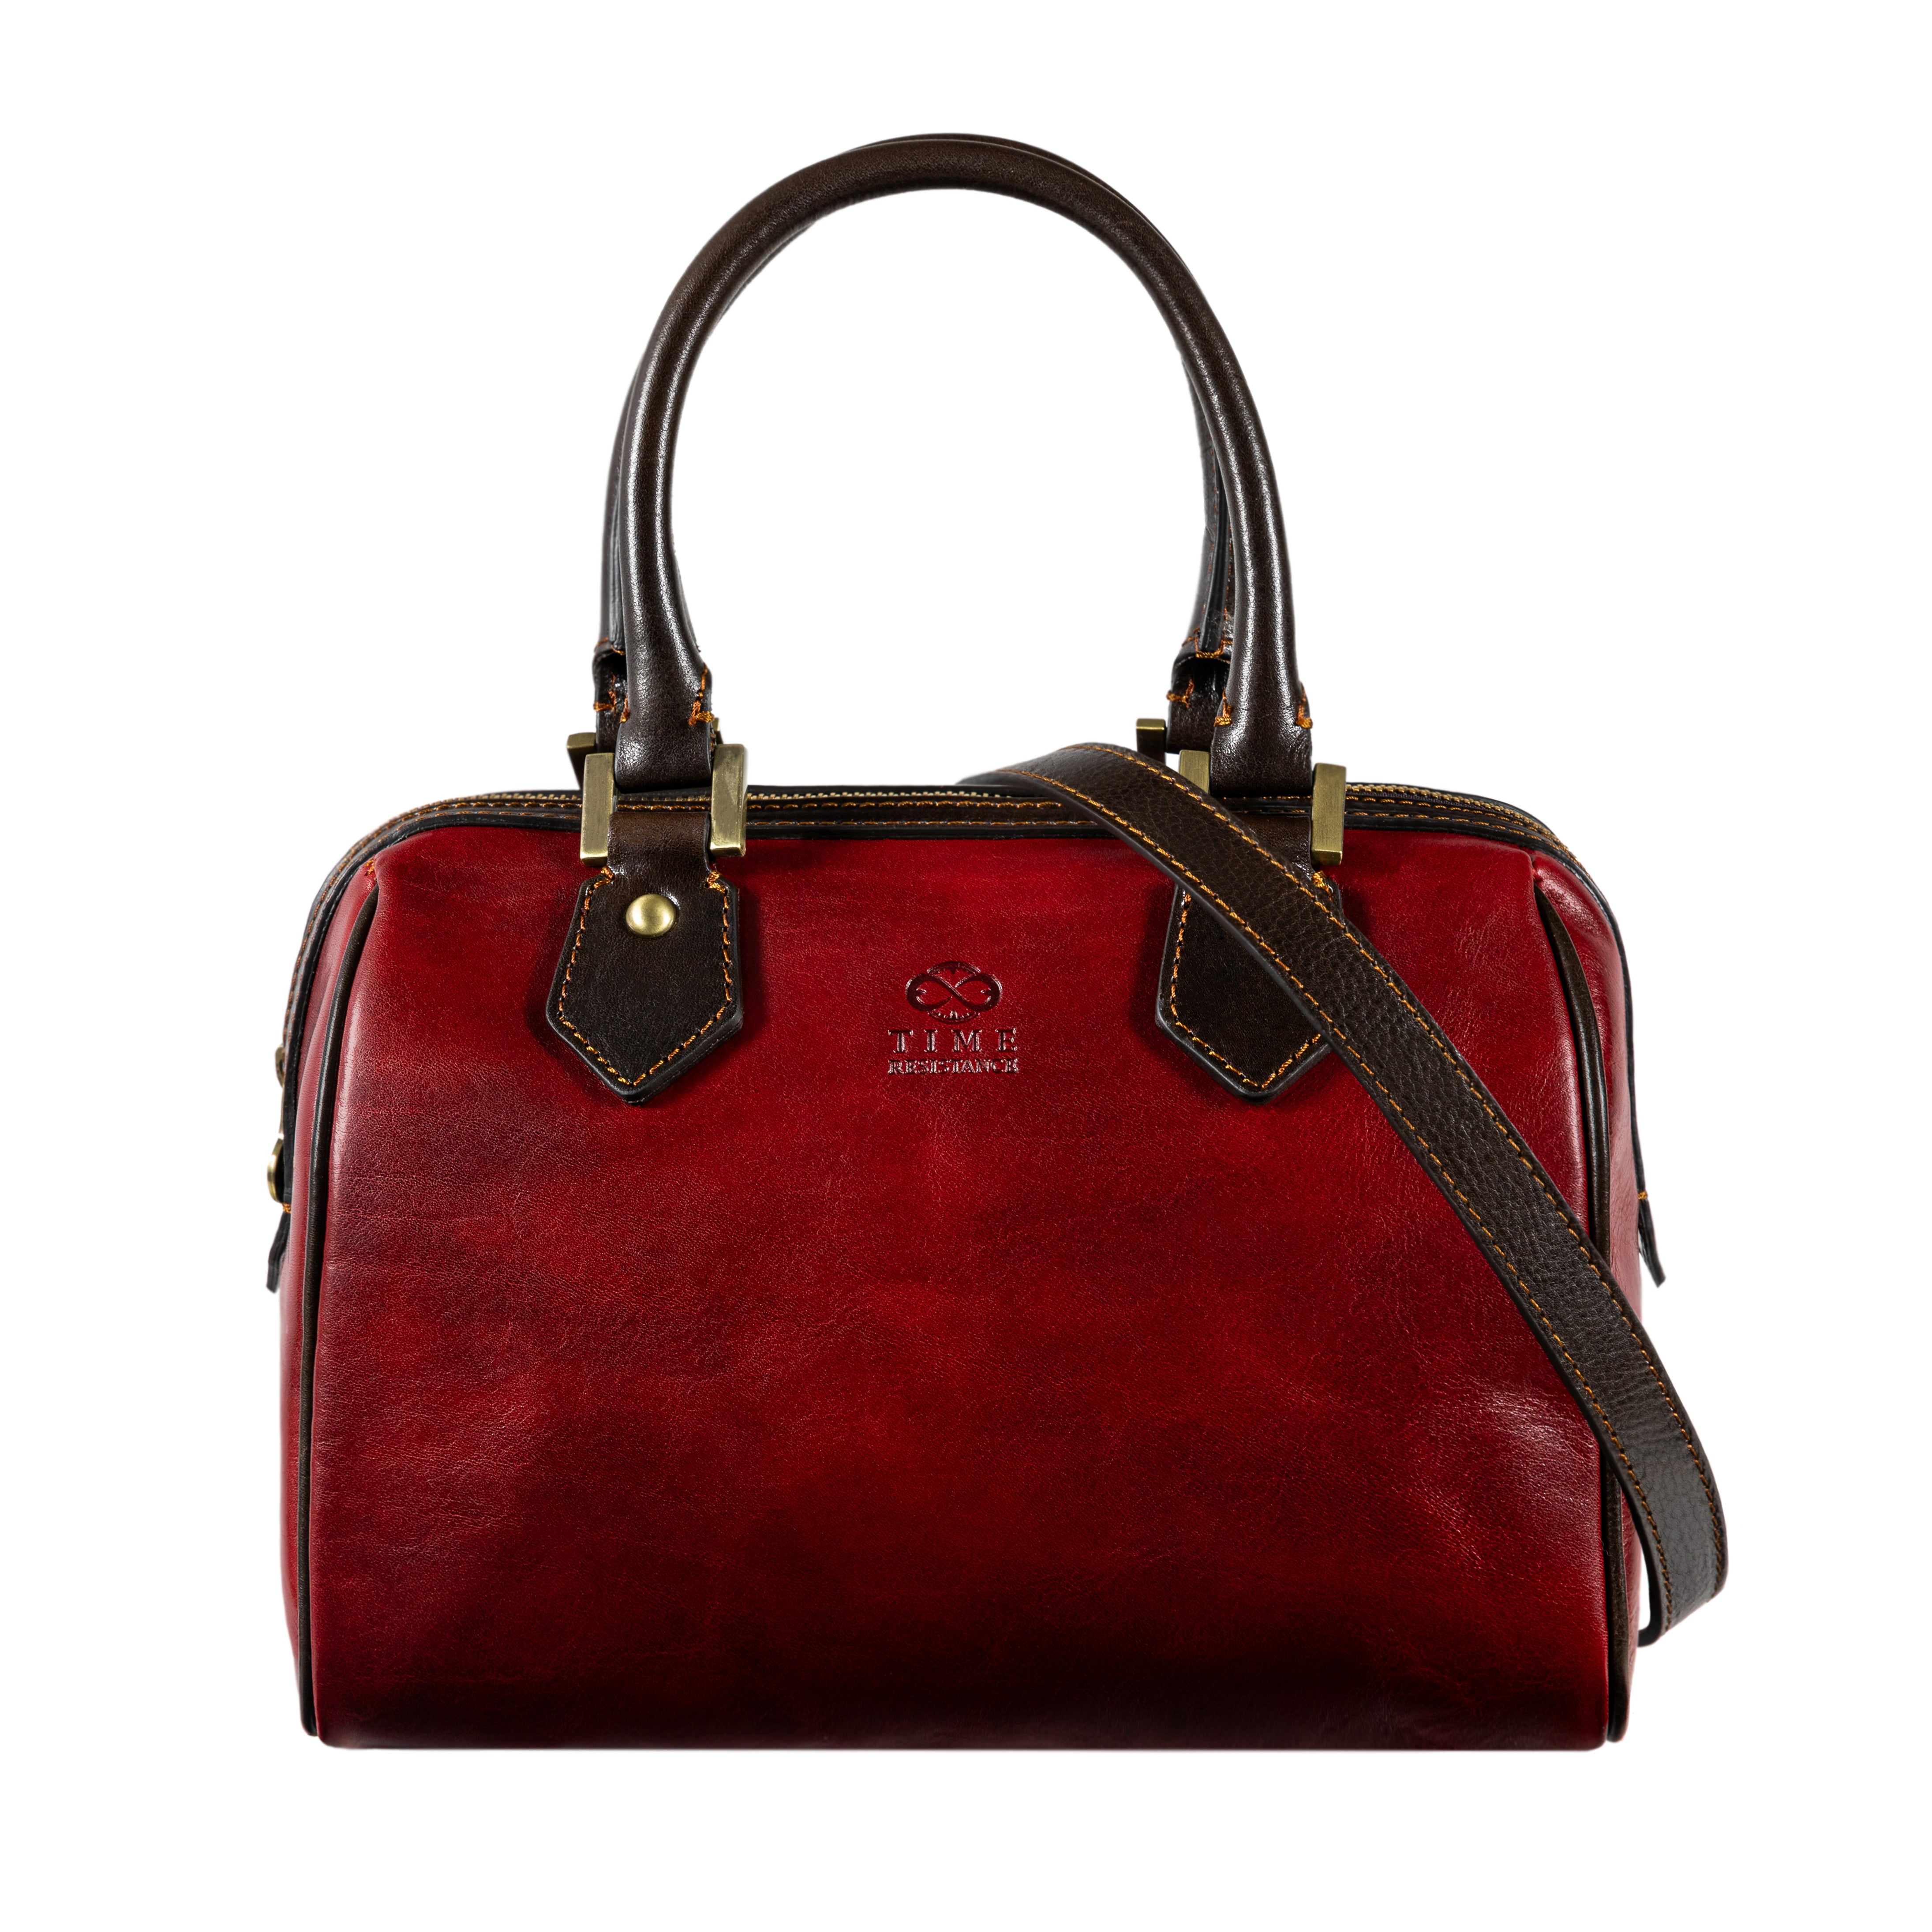 red leather handbag shoulder bag little dorrit time resistance 2